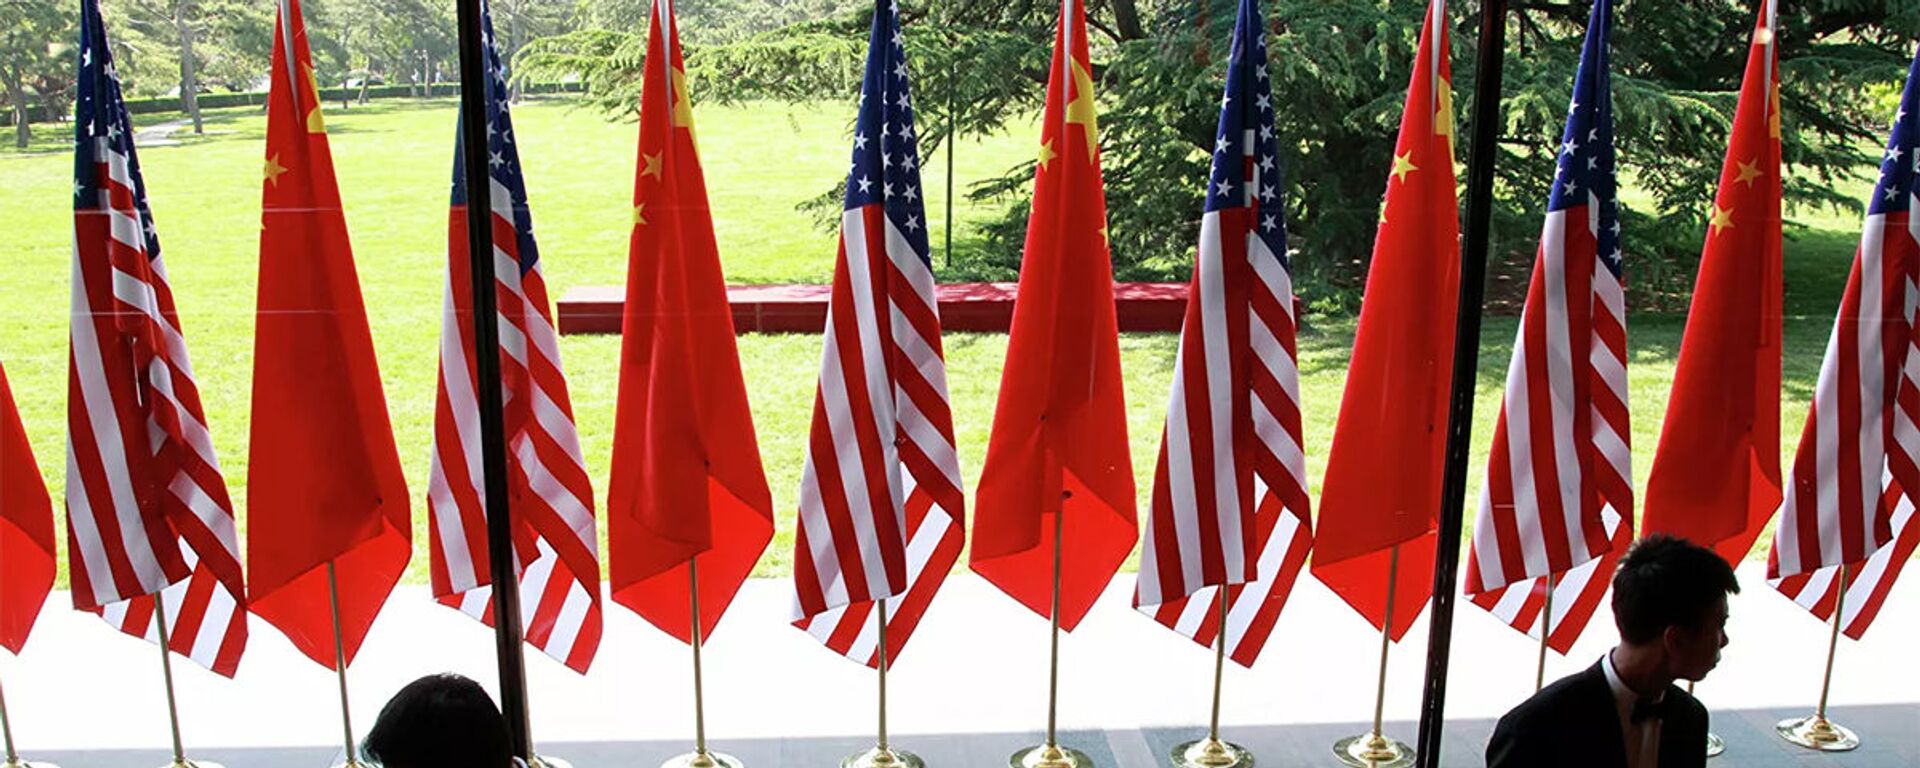 Cờ của Trung Quốc và Hoa Kỳ tại lễ khai mạc Đối thoại chiến lược và kinh tế Mỹ-Trung tại Bắc Kinh - Sputnik Việt Nam, 1920, 03.06.2022